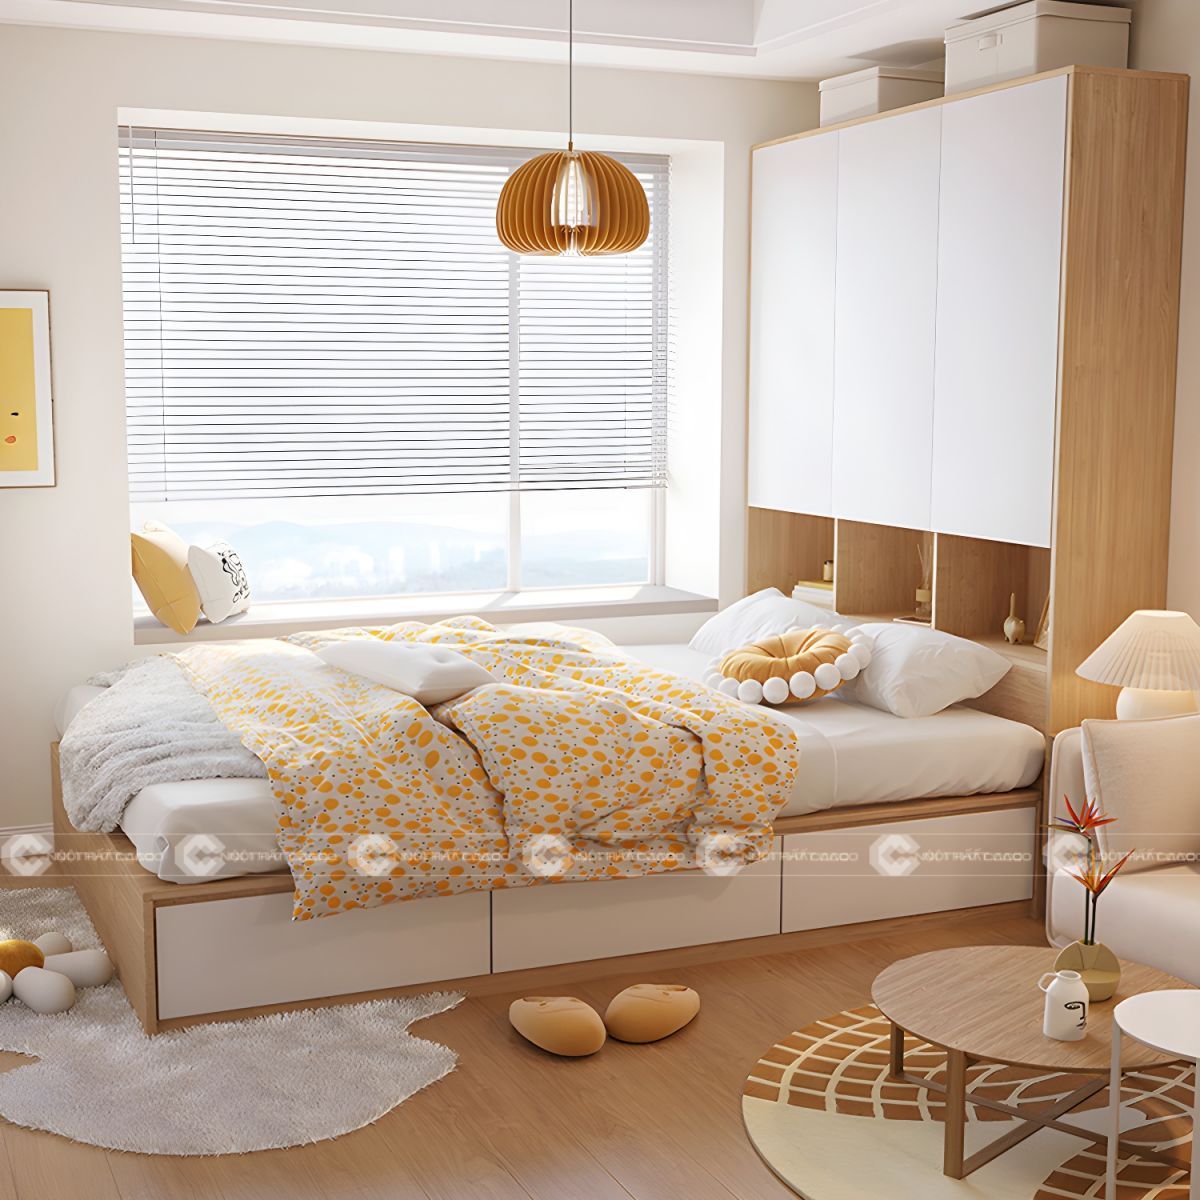 Giường ngủ gỗ công nghiệp tích hợp tủ tối ưu diện tích